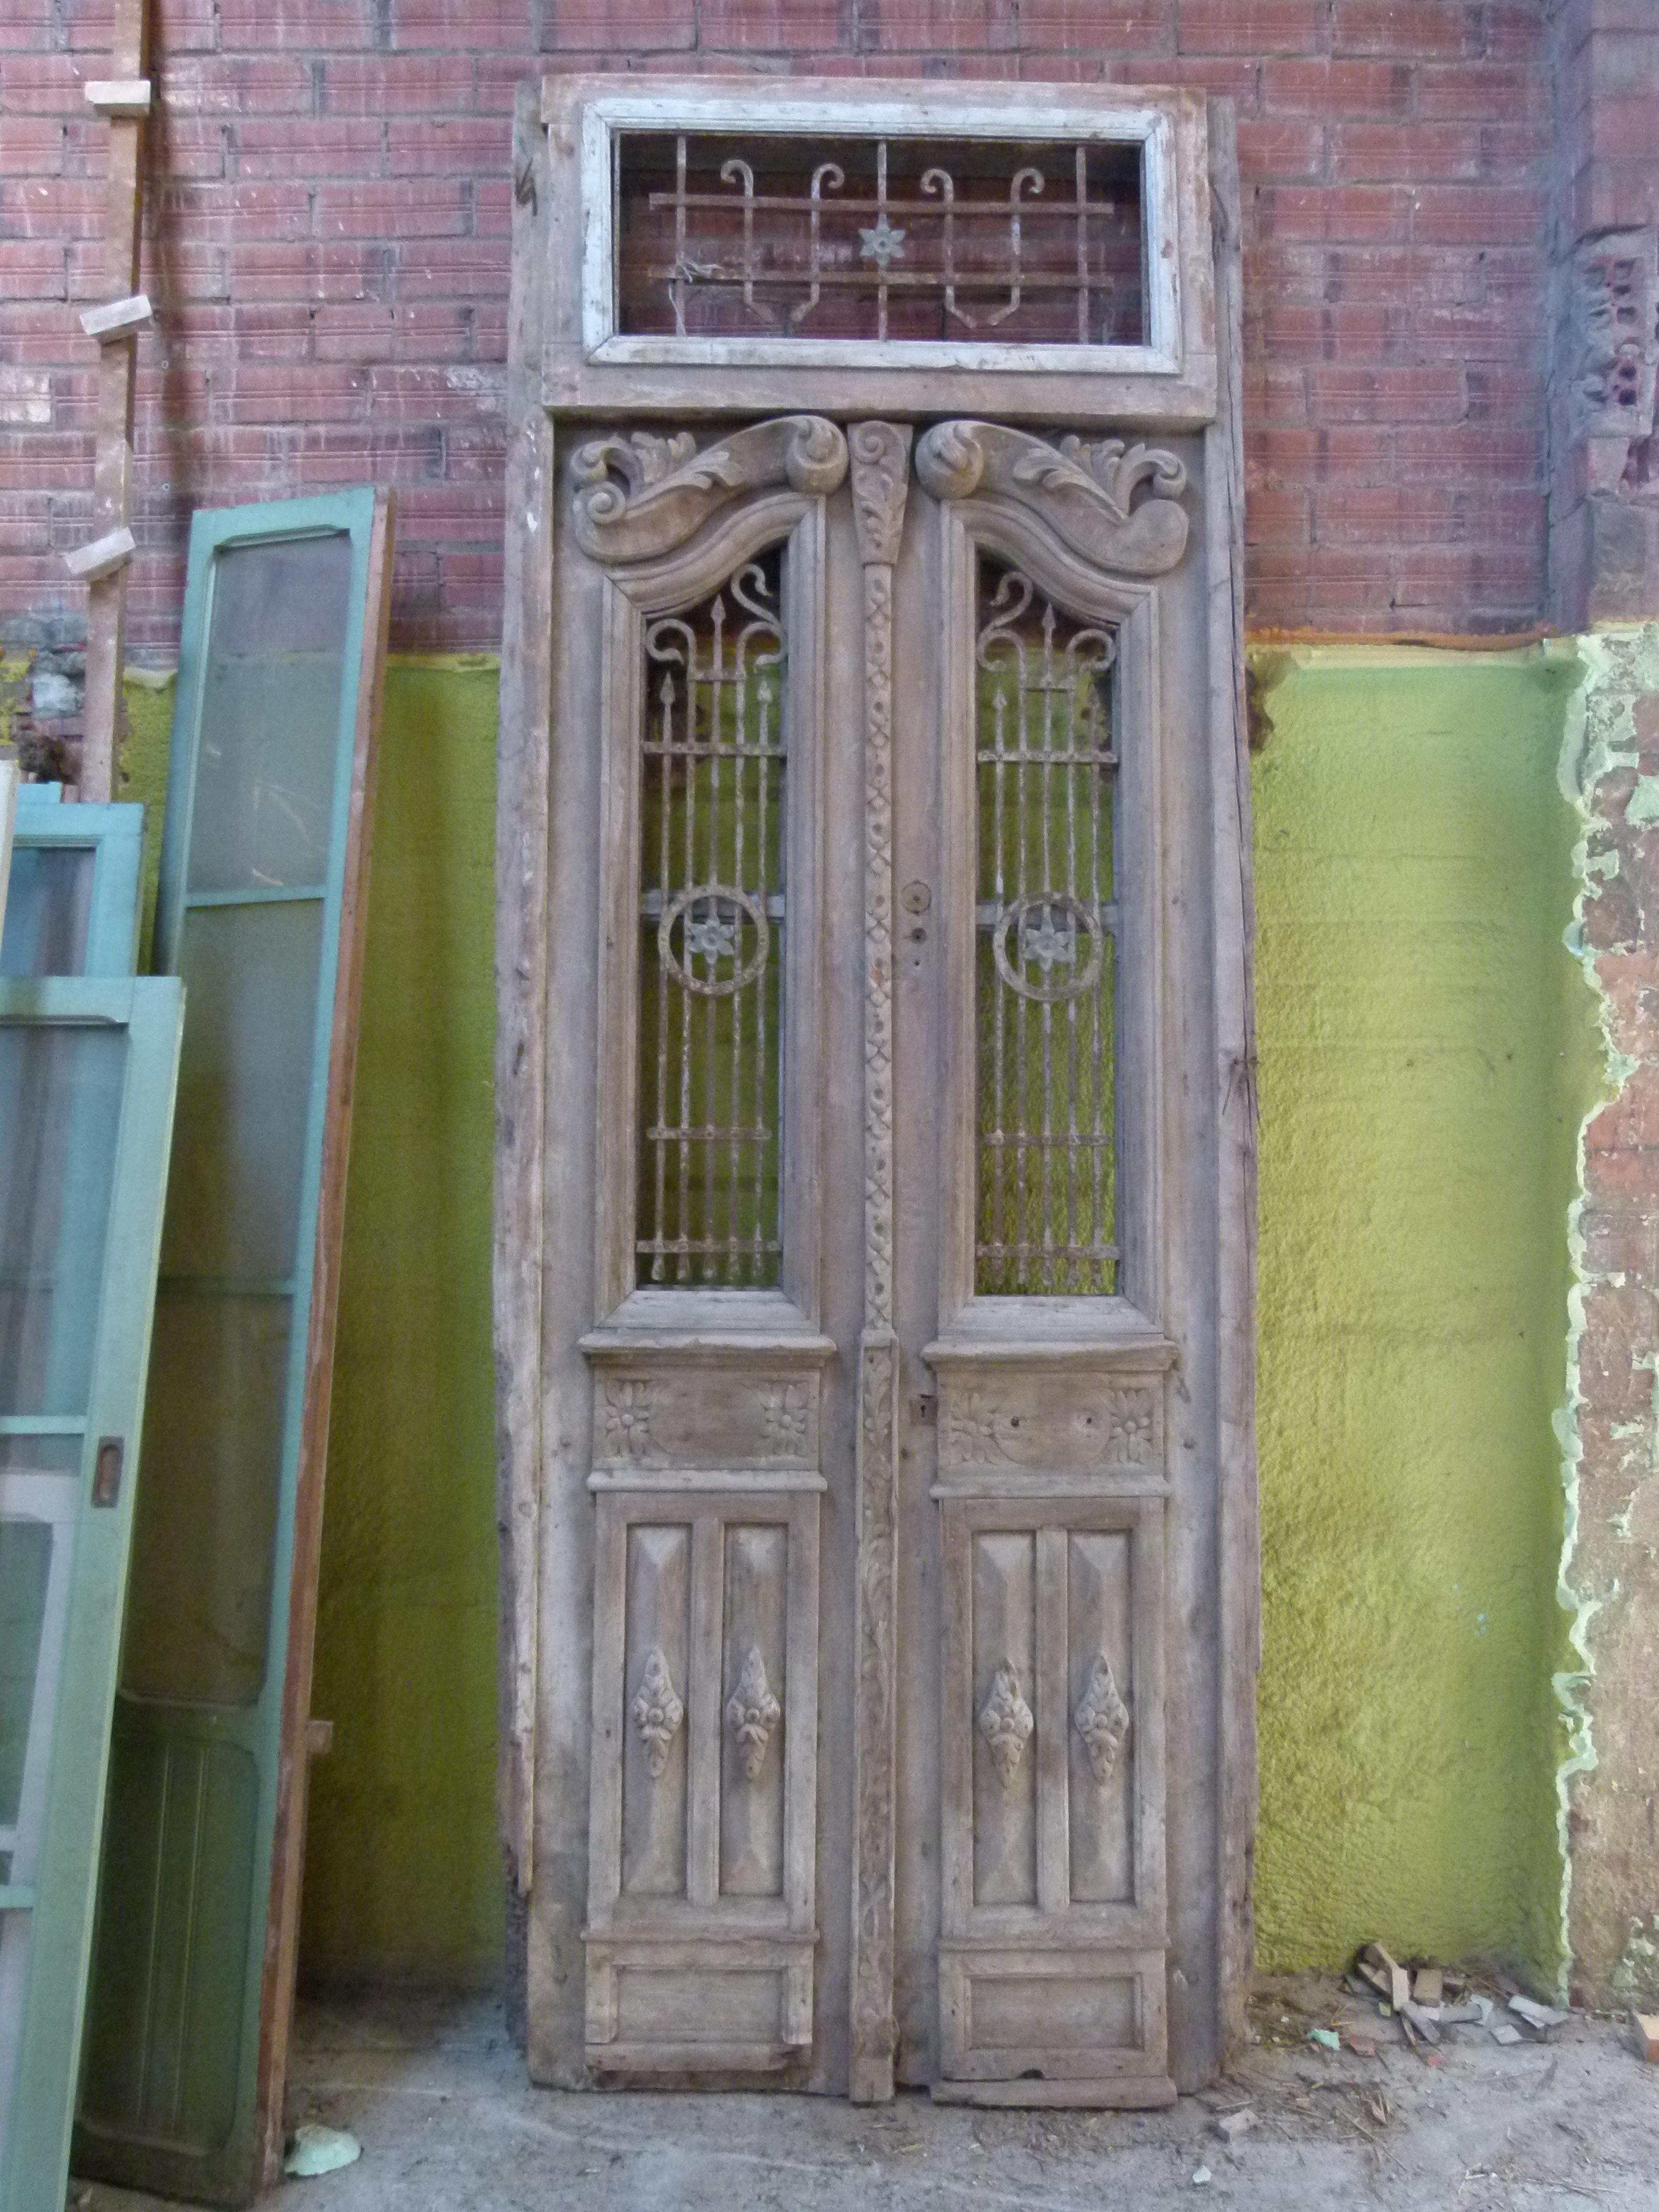 Hölzerne Doppeltür aus dem 19. Jahrhundert mit Patina im Jugendstil.
 Geschnitztes Holz und Gusseisen sind typisch für diese Zeit.
Die ursprüngliche Patina der Tür und ihr Stil verleihen Ihrem Gebäude oder Haus den nötigen Charme.